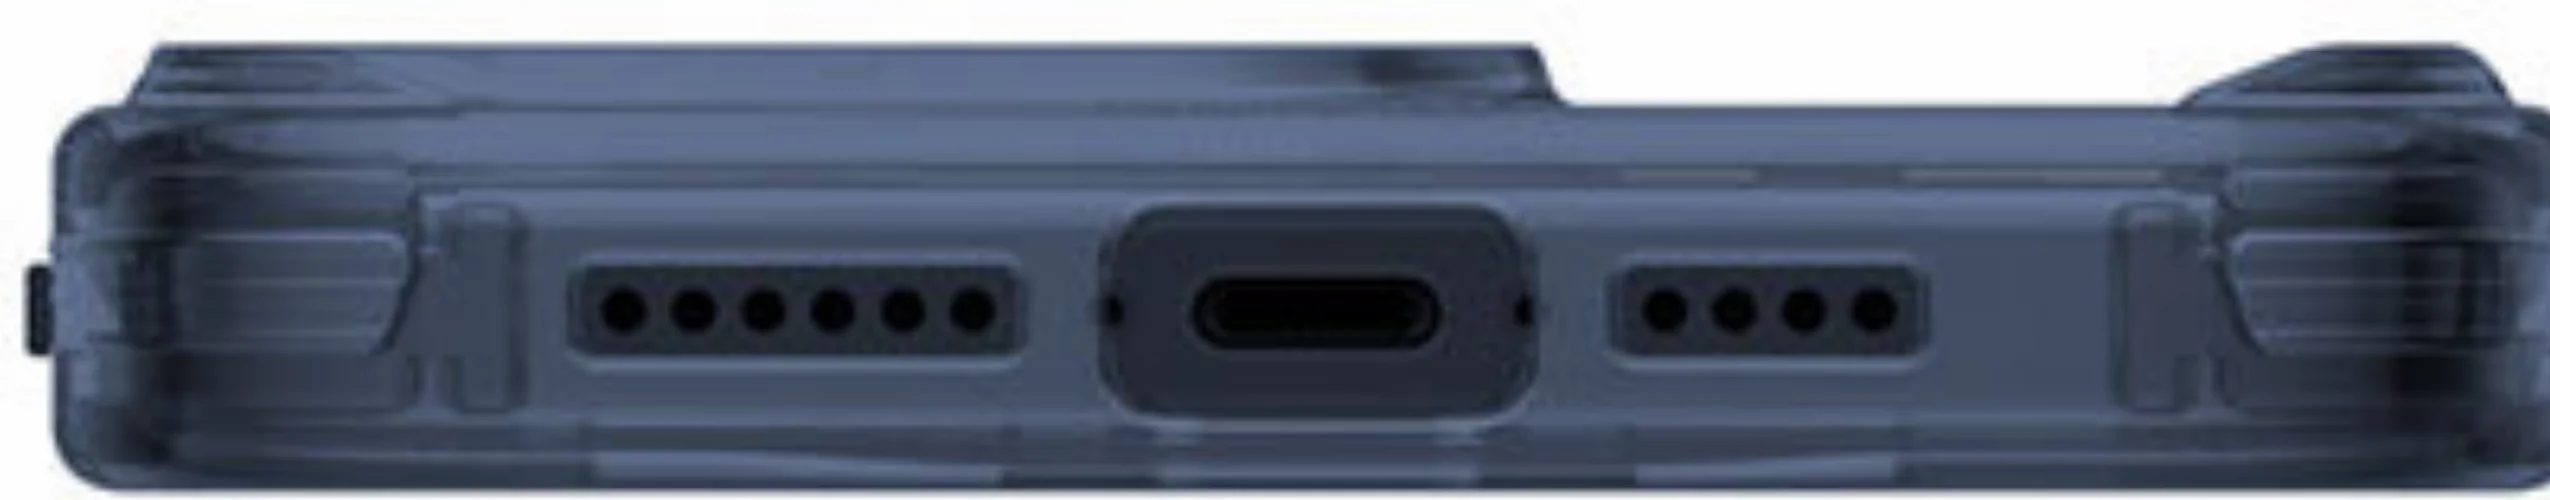 Apple iPhone 15 Pro Max Kılıf SkinArma Şeffaf Airbag Tasarımlı Magsafe Şarj Özellikli Saido Kapak - Şeffaf